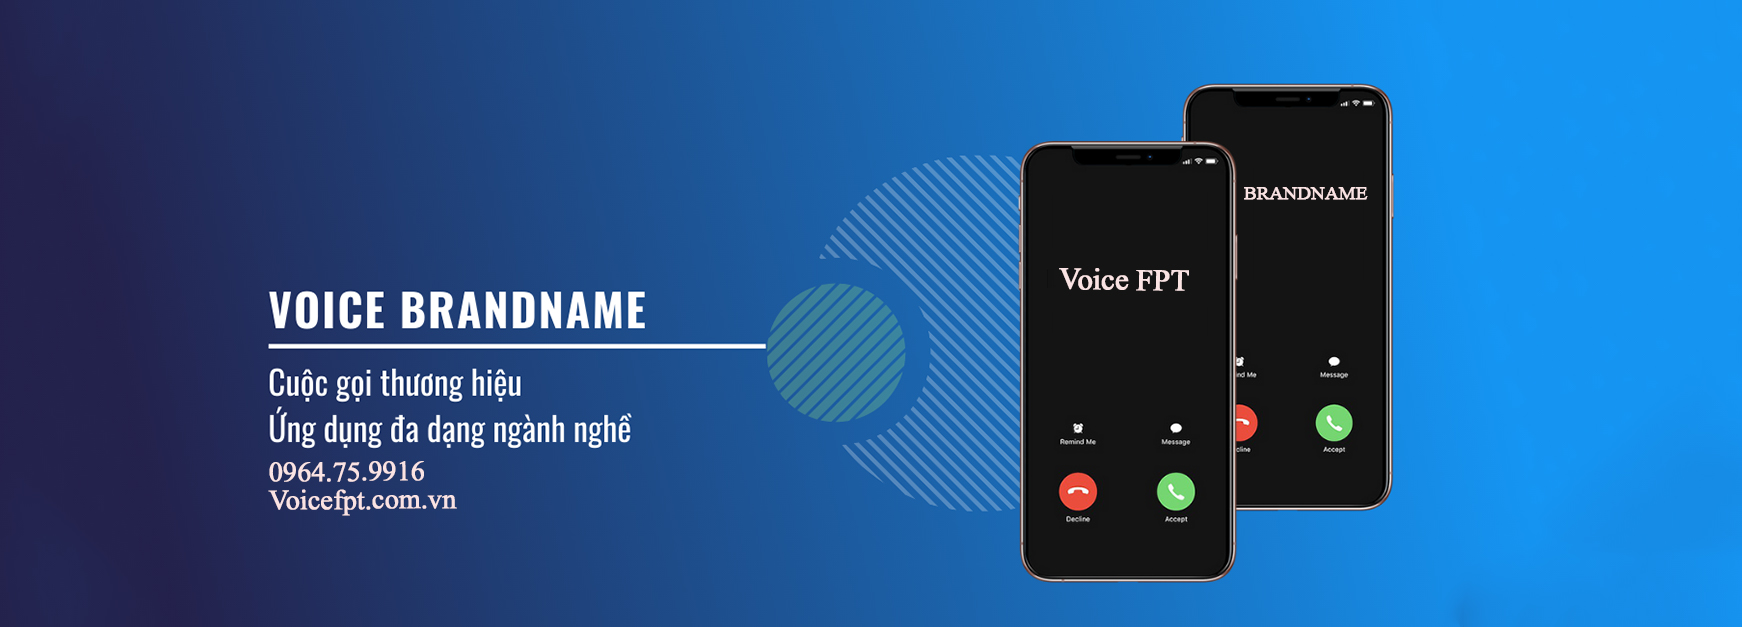 Voice Brandname - Nâng tầm thương hiệu qua cuộc gọi